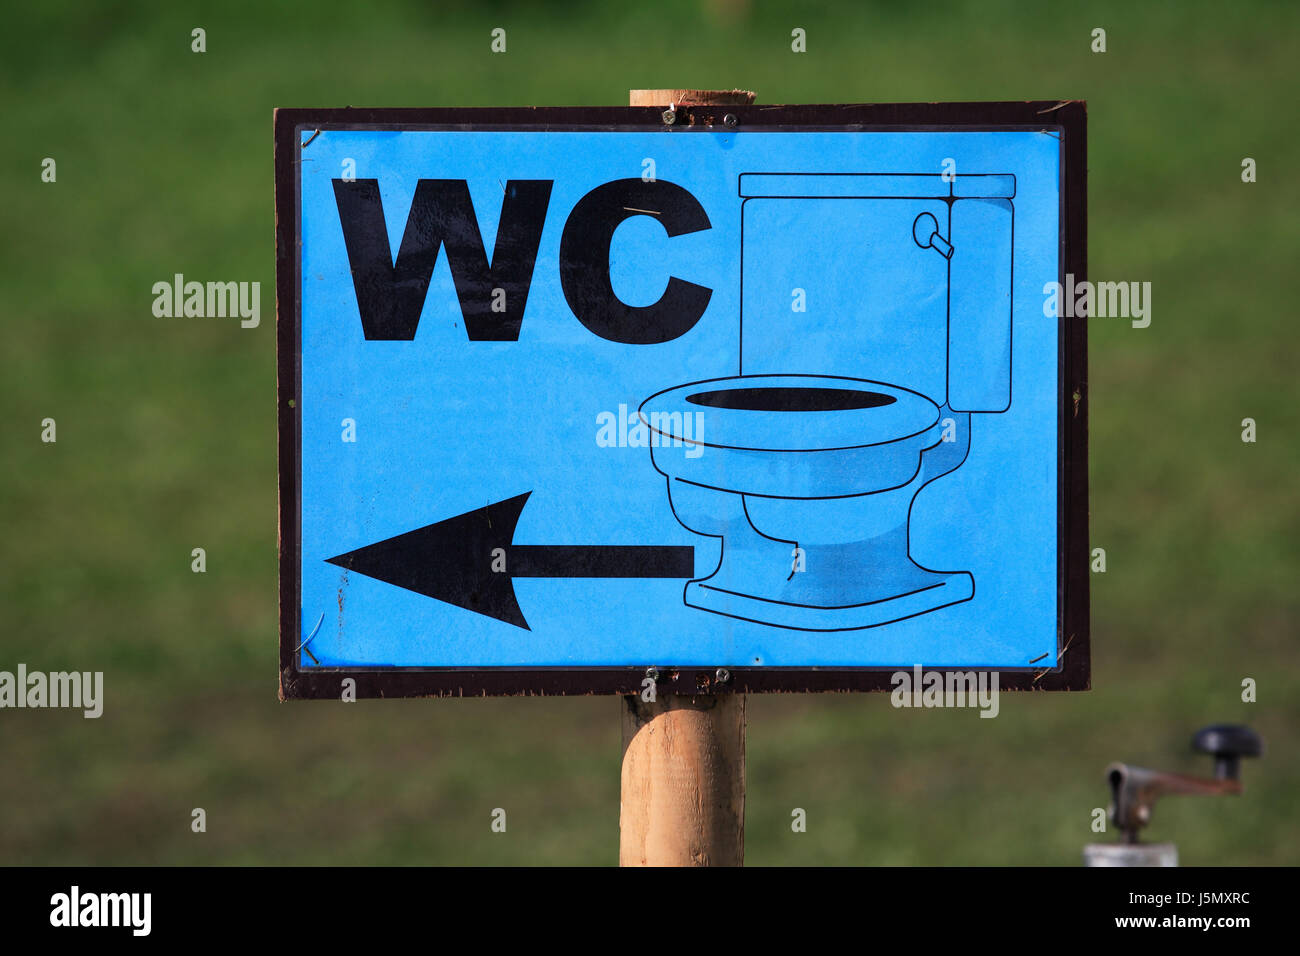 Inscrivez-bleu de toilettes truc pointant la Diarrhée La diarrhée hinweisschild Banque D'Images